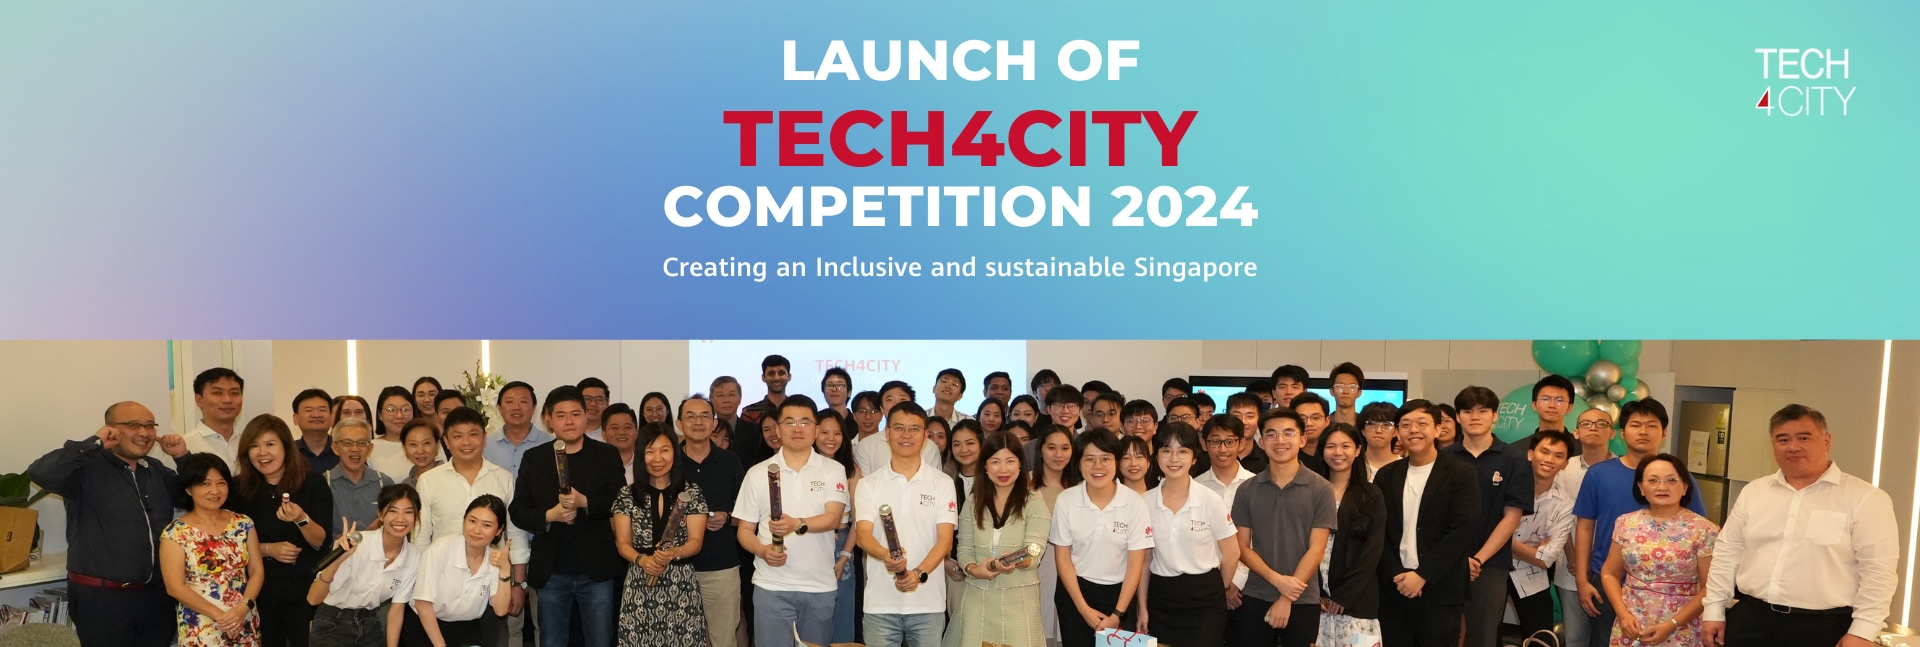 Tech4City Launch Party